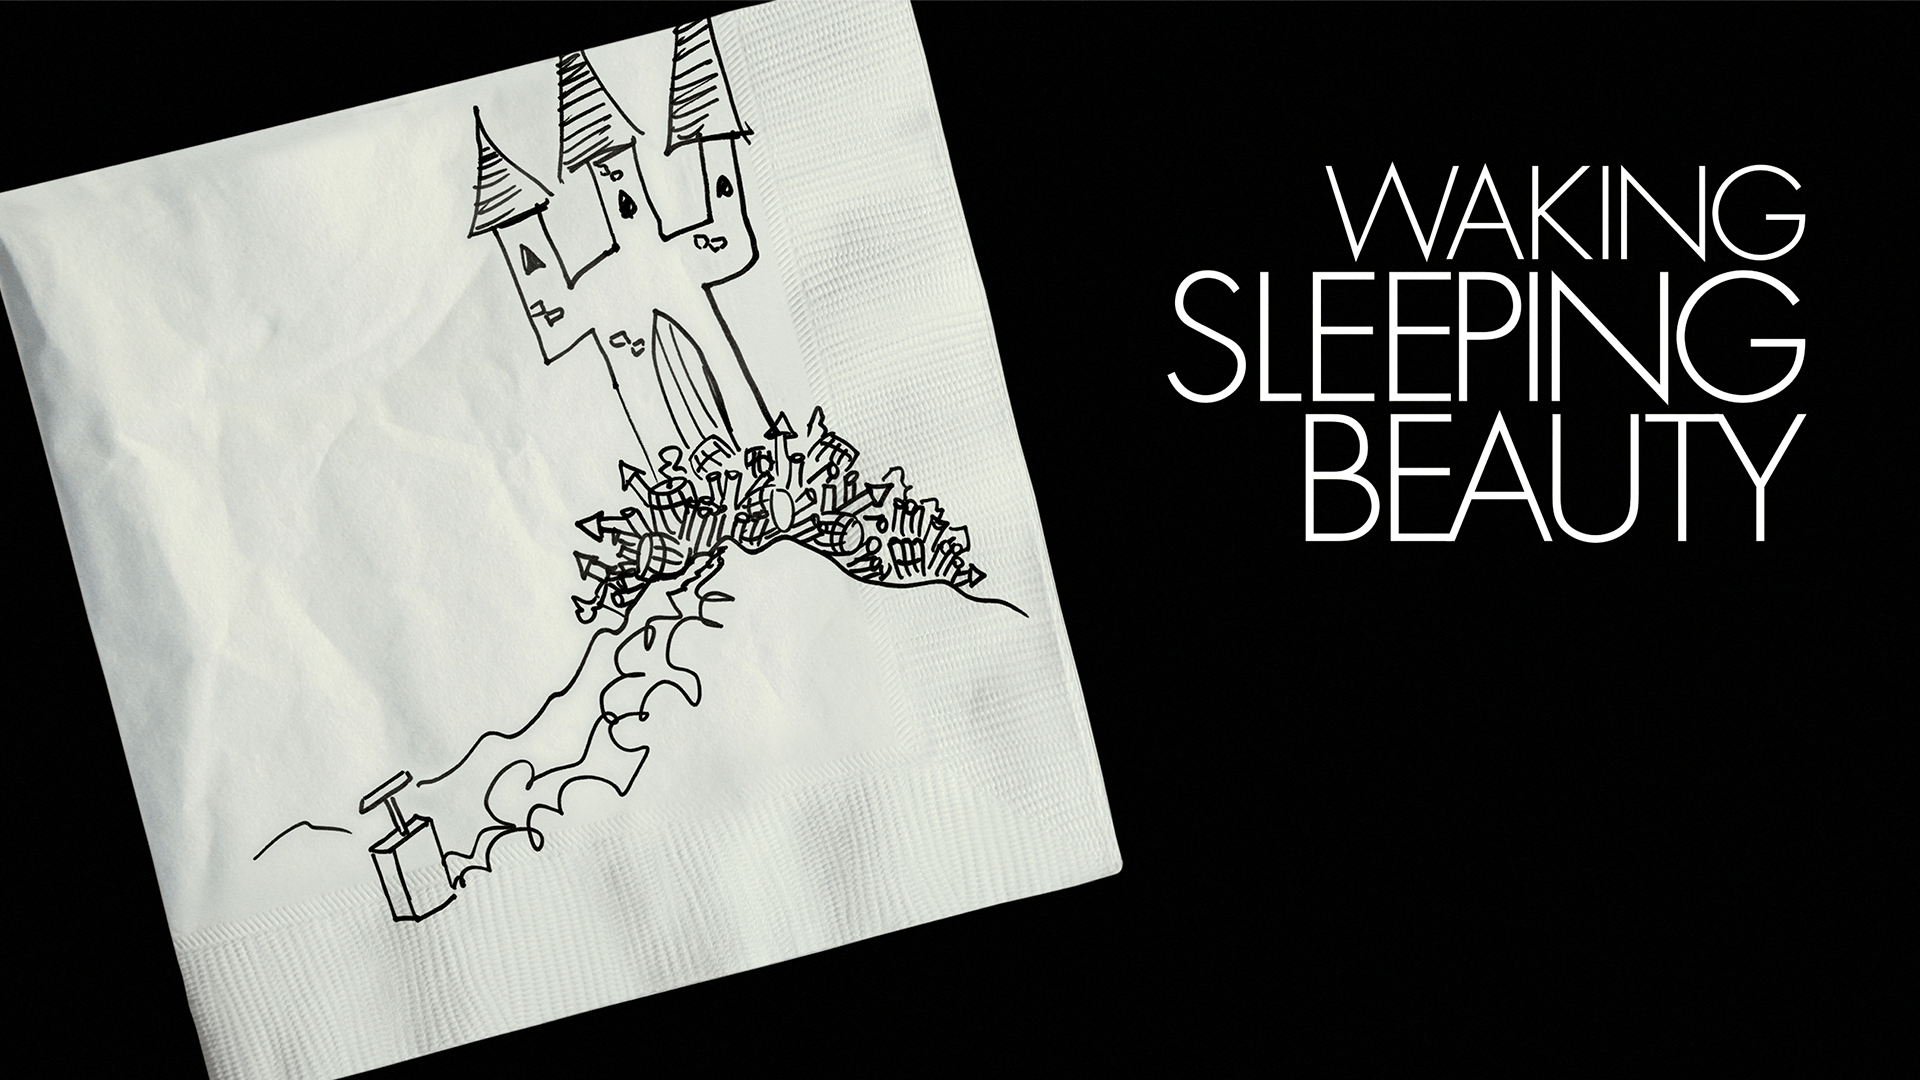 Watch Sleeping Beauty Online Free